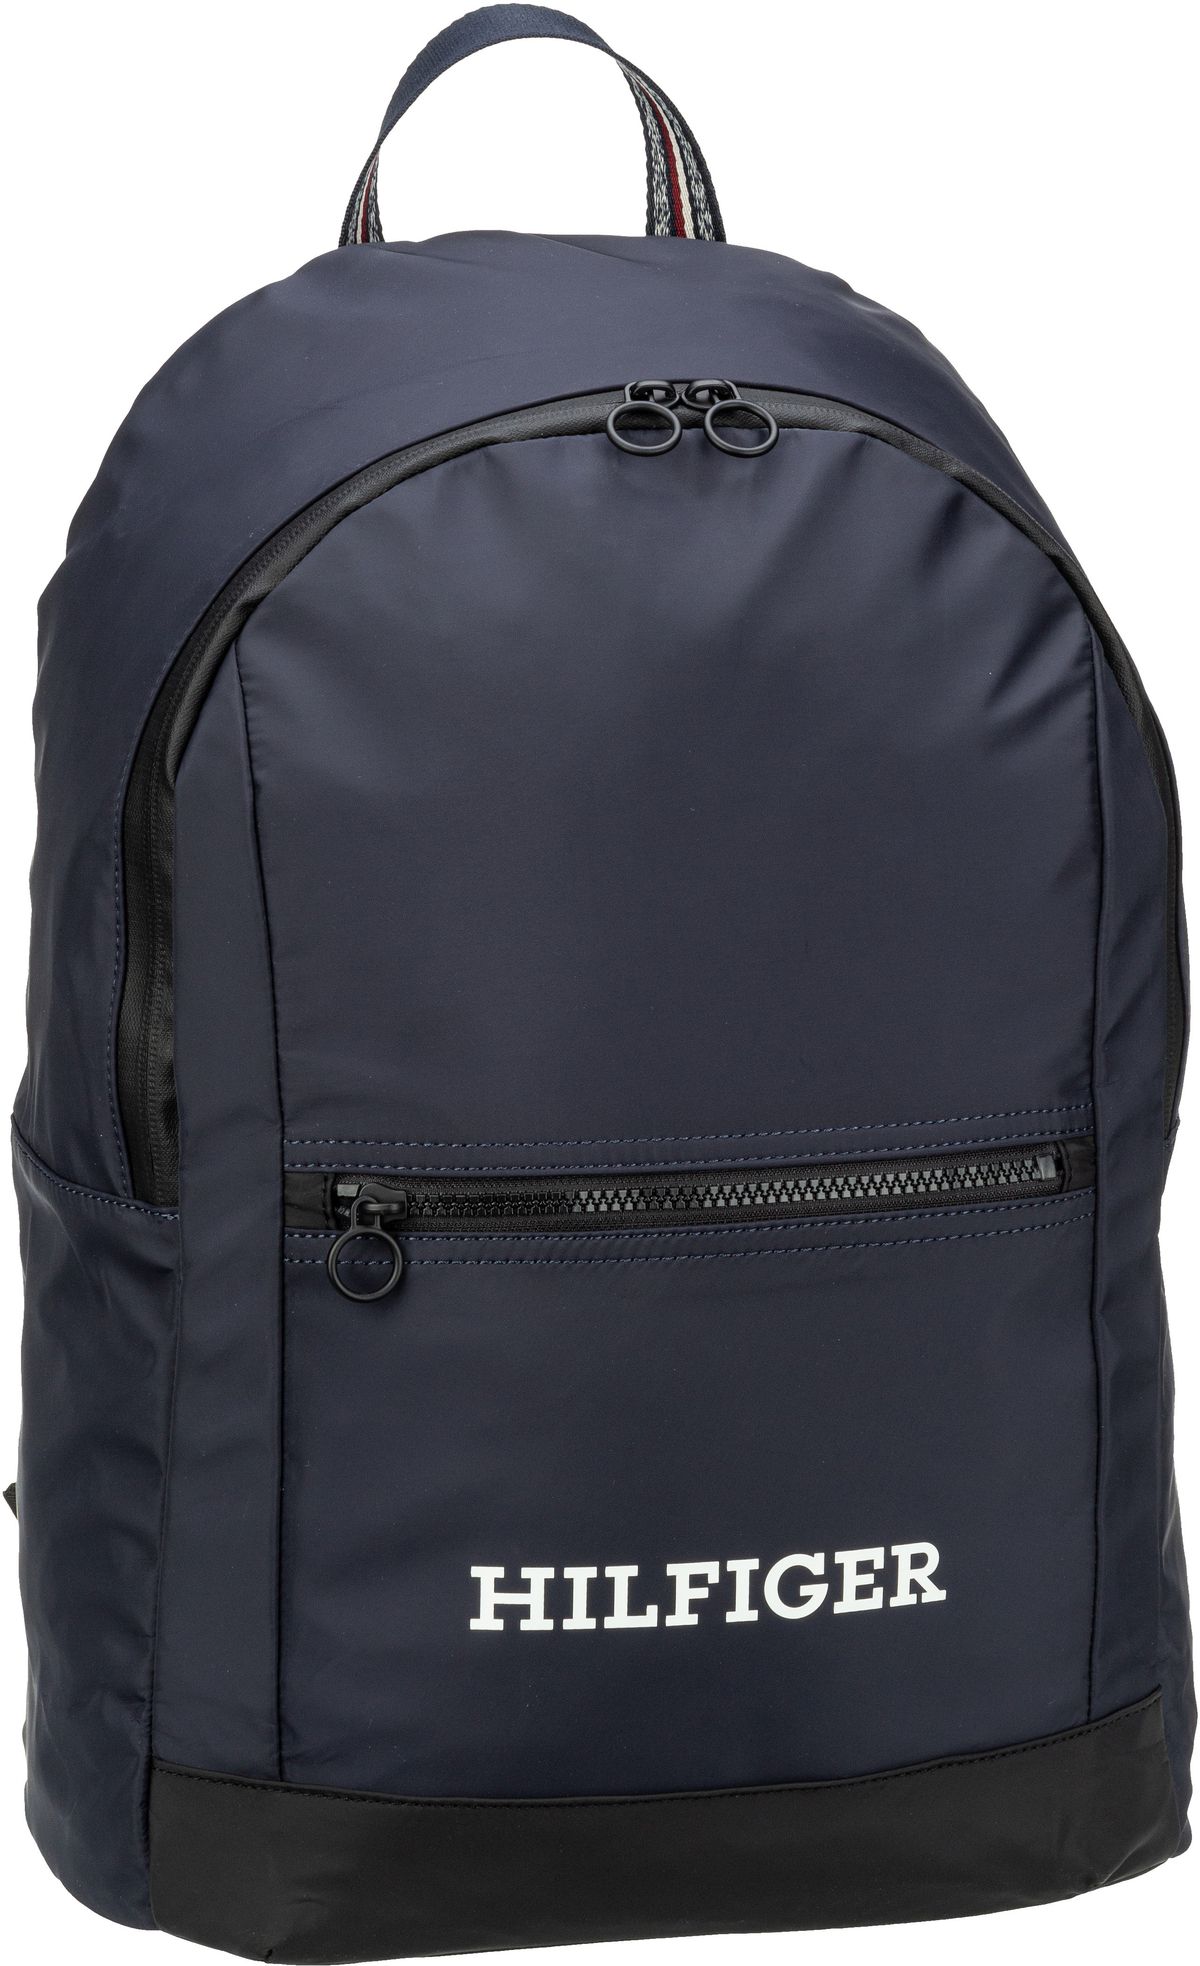 Tommy Hilfiger Hilfiger Dome Backpack PF23  in Navy (21.8 Liter), Rucksack / Backpack